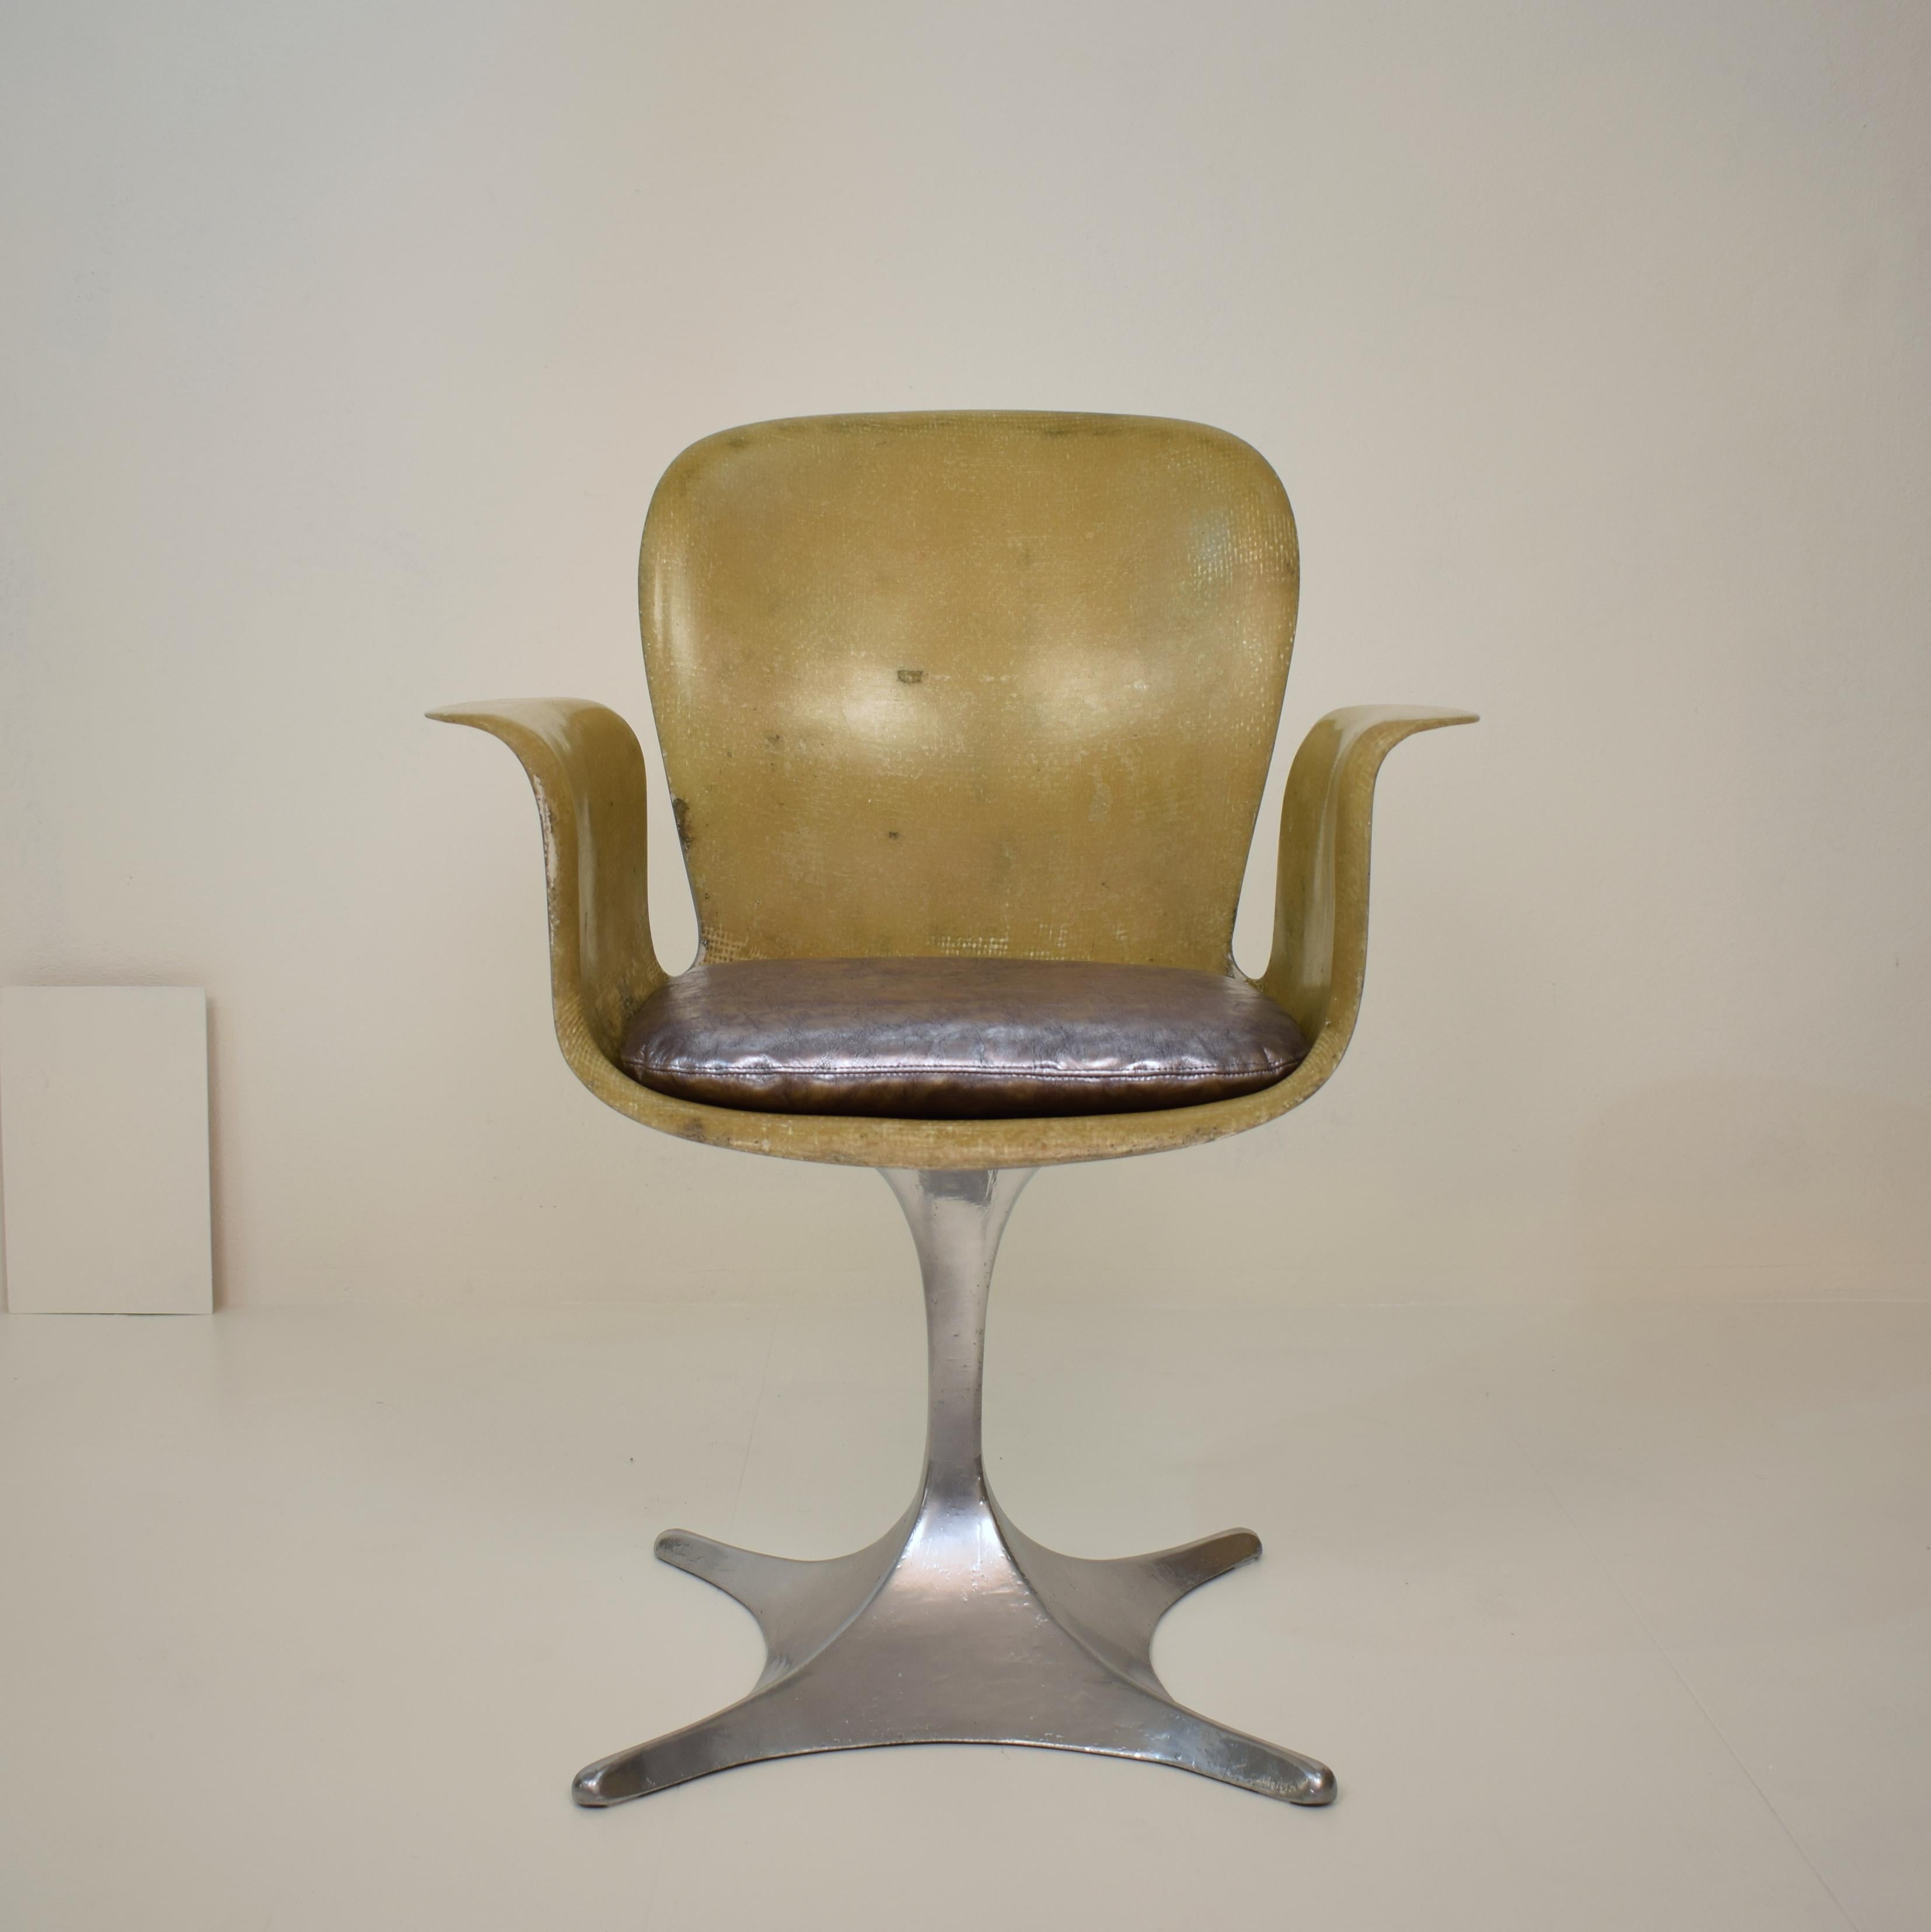 Dieser schöne und seltene deutsche skulpturale Fiberglas-Sessel aus der Mitte des Jahrhunderts wurde um 1957 hergestellt.
Es ist ein Prototyp und ein Unikat.
Der Stuhl ist handgefertigt und die Außenseite und die Basis ist in Silber lackiert. Das